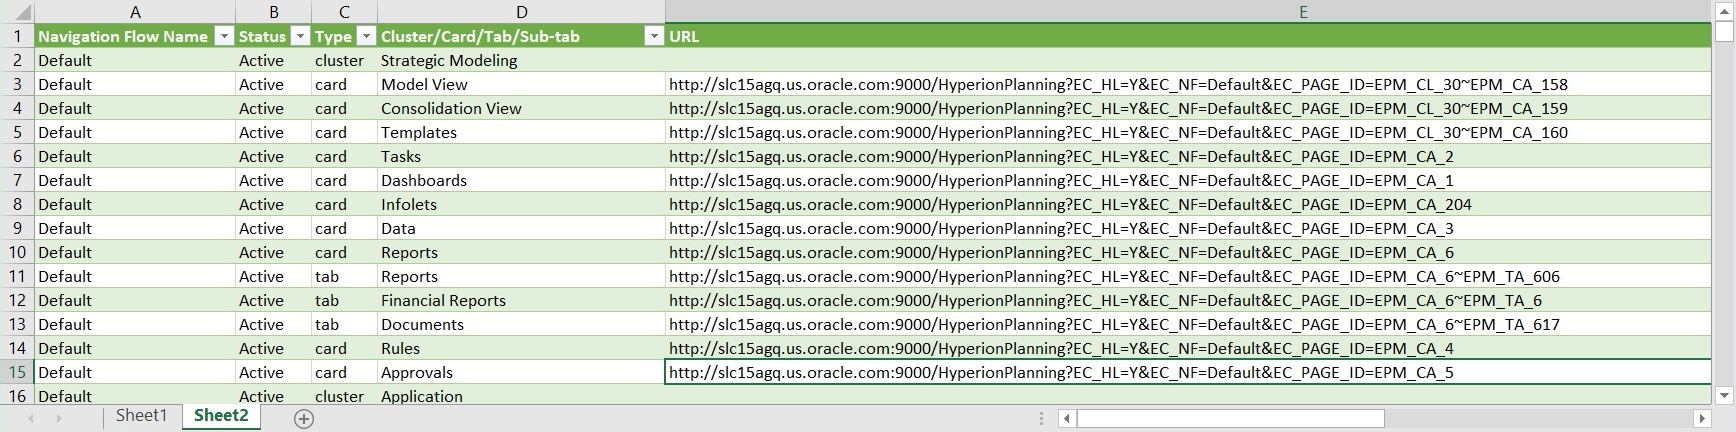 Exemple de fichier d'export d'URL directes affiché dans Excel